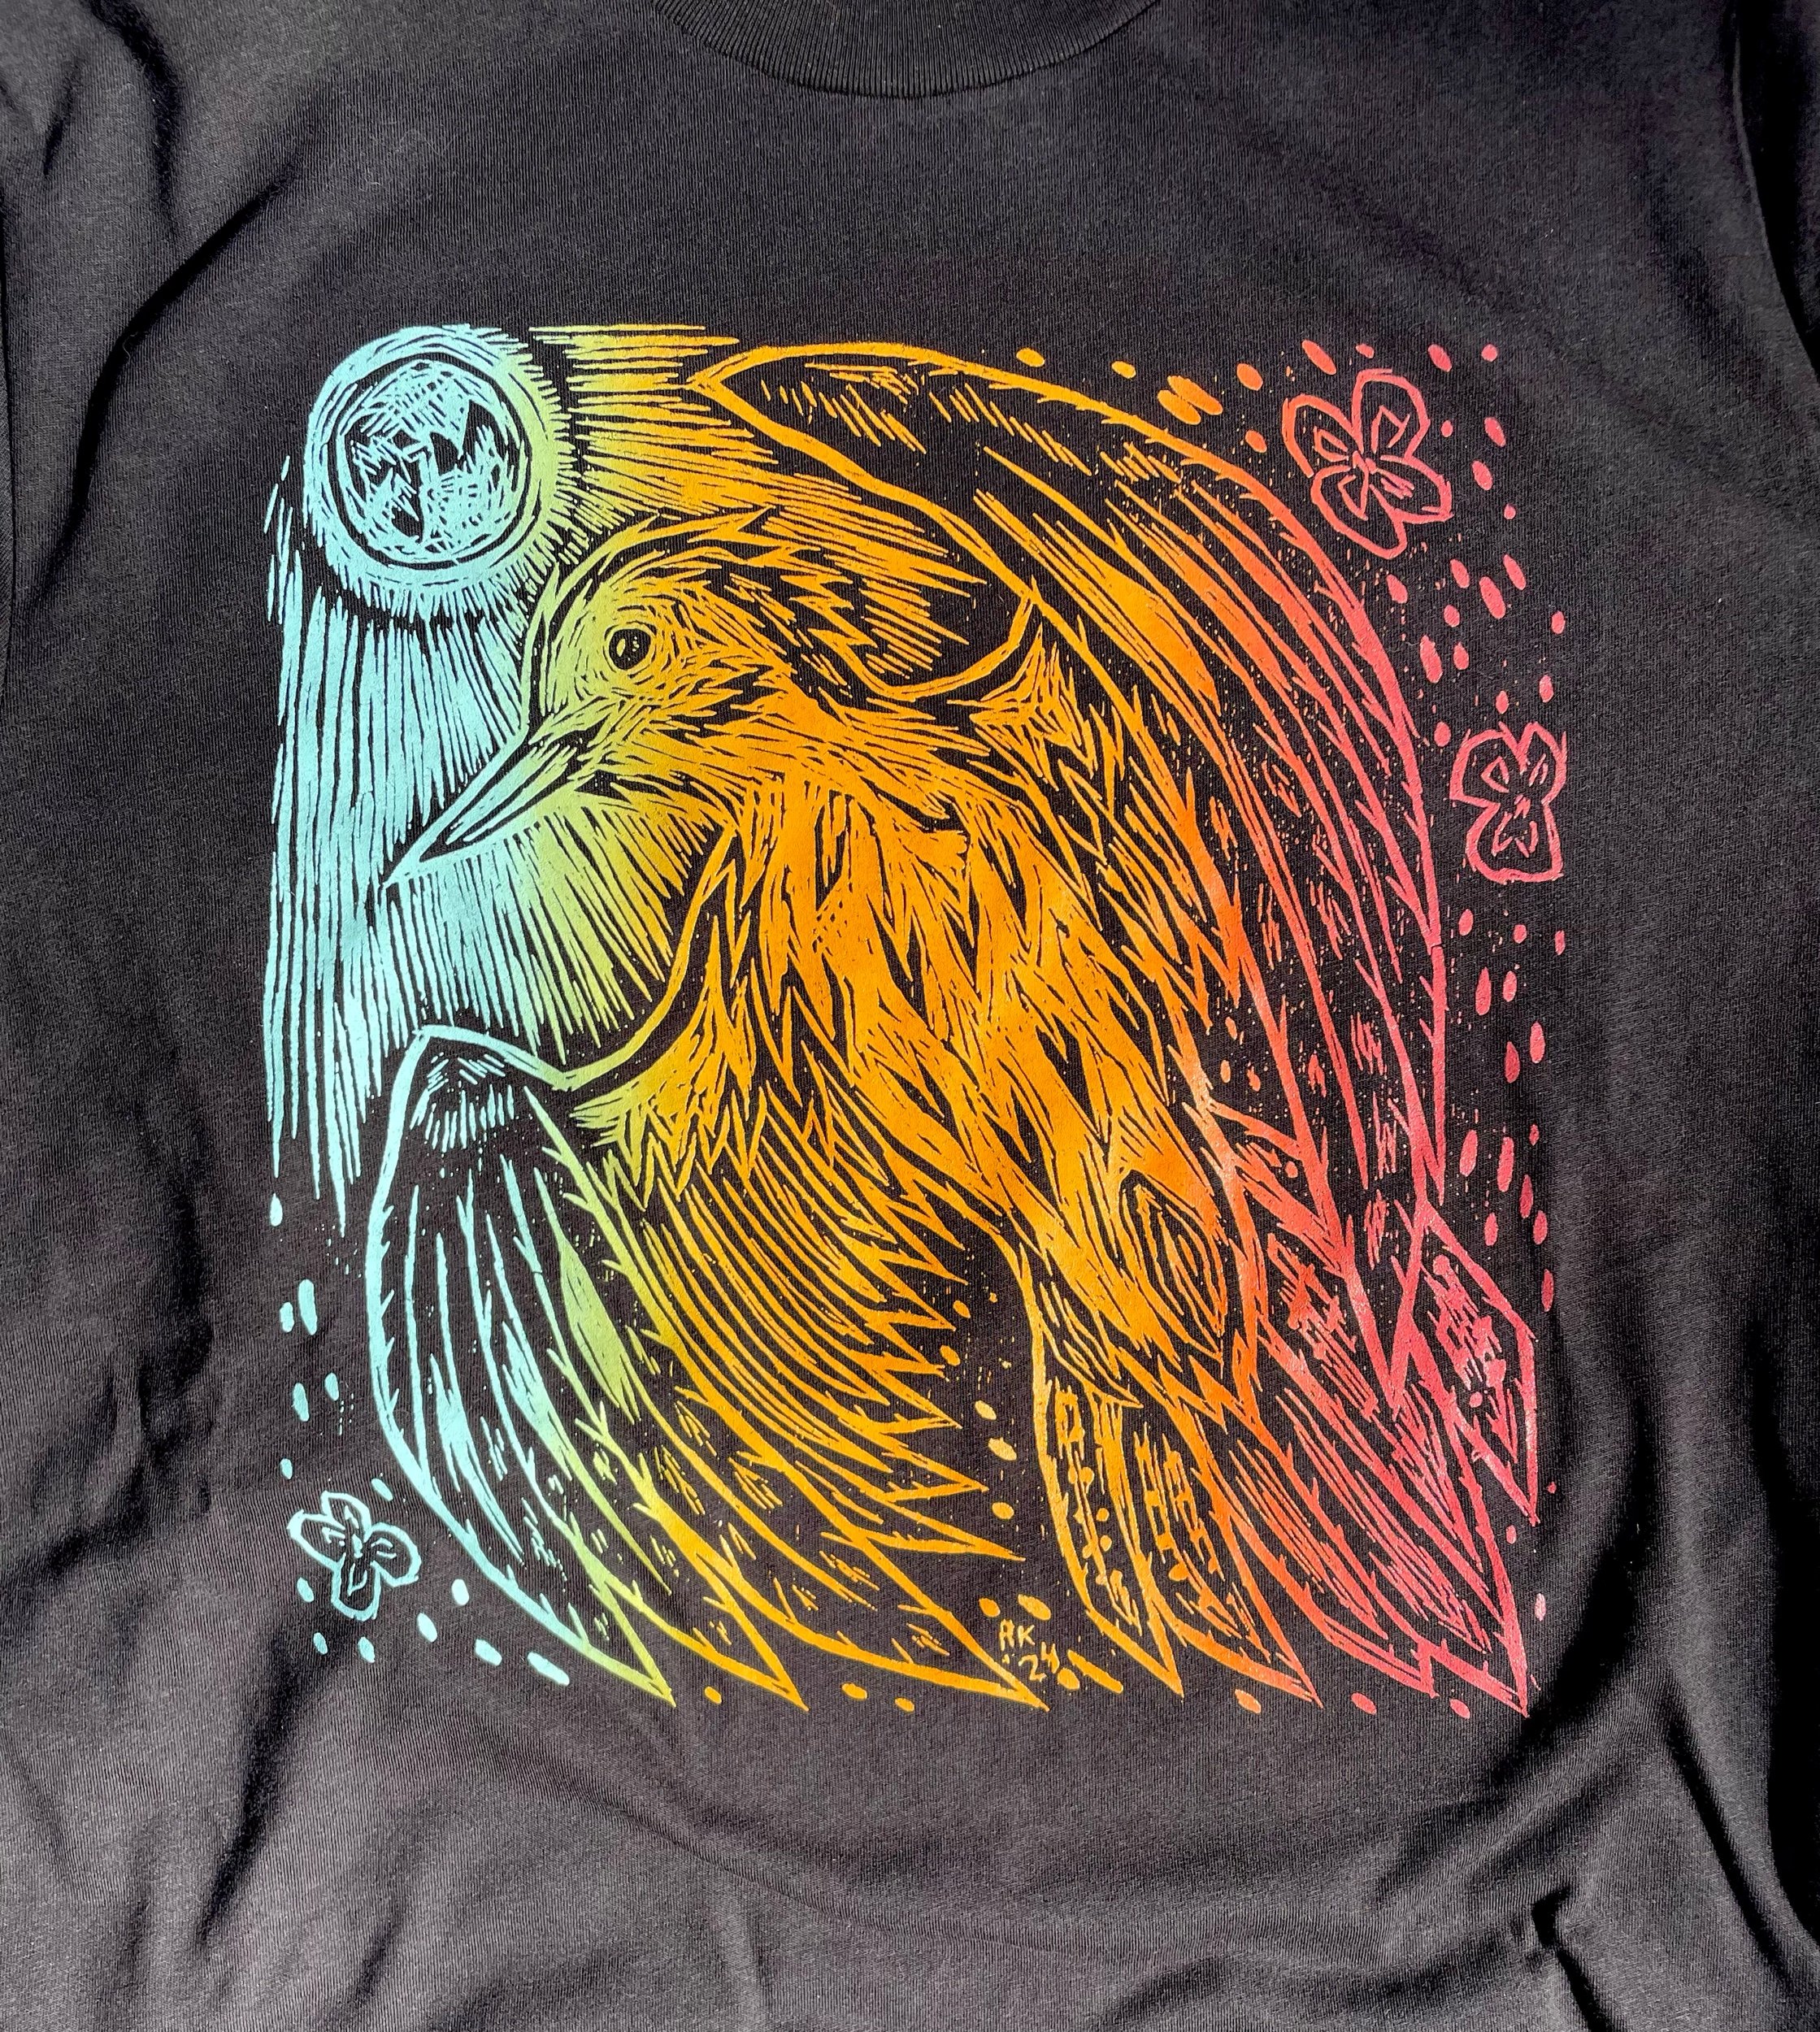 Rhythmist & Moon t-shirt design